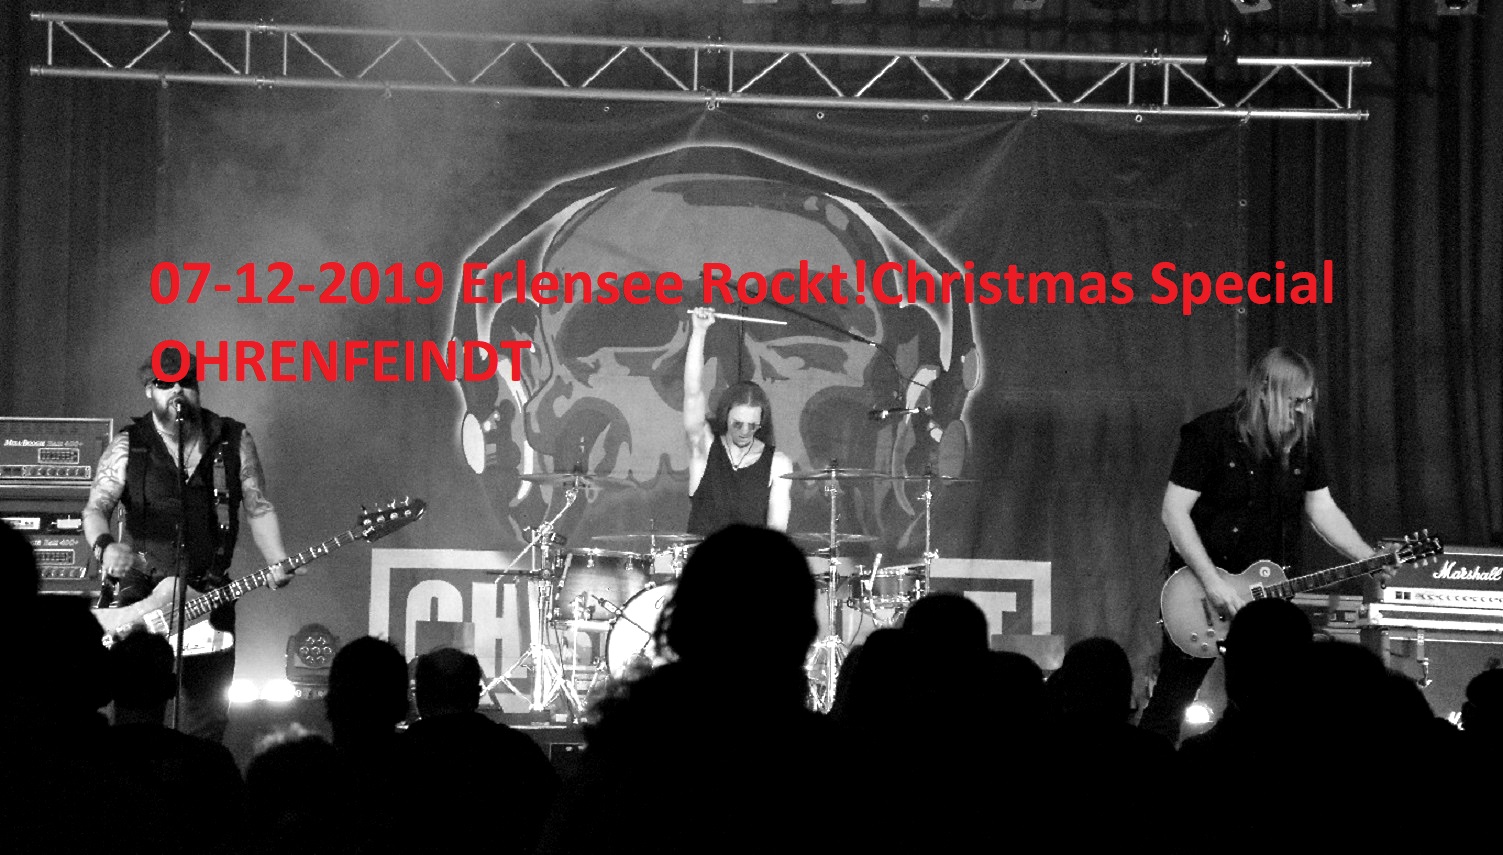 OHRENFEINDT / Erlensee Rockt! Christmas Special 07-12-2019, Support: CUMA